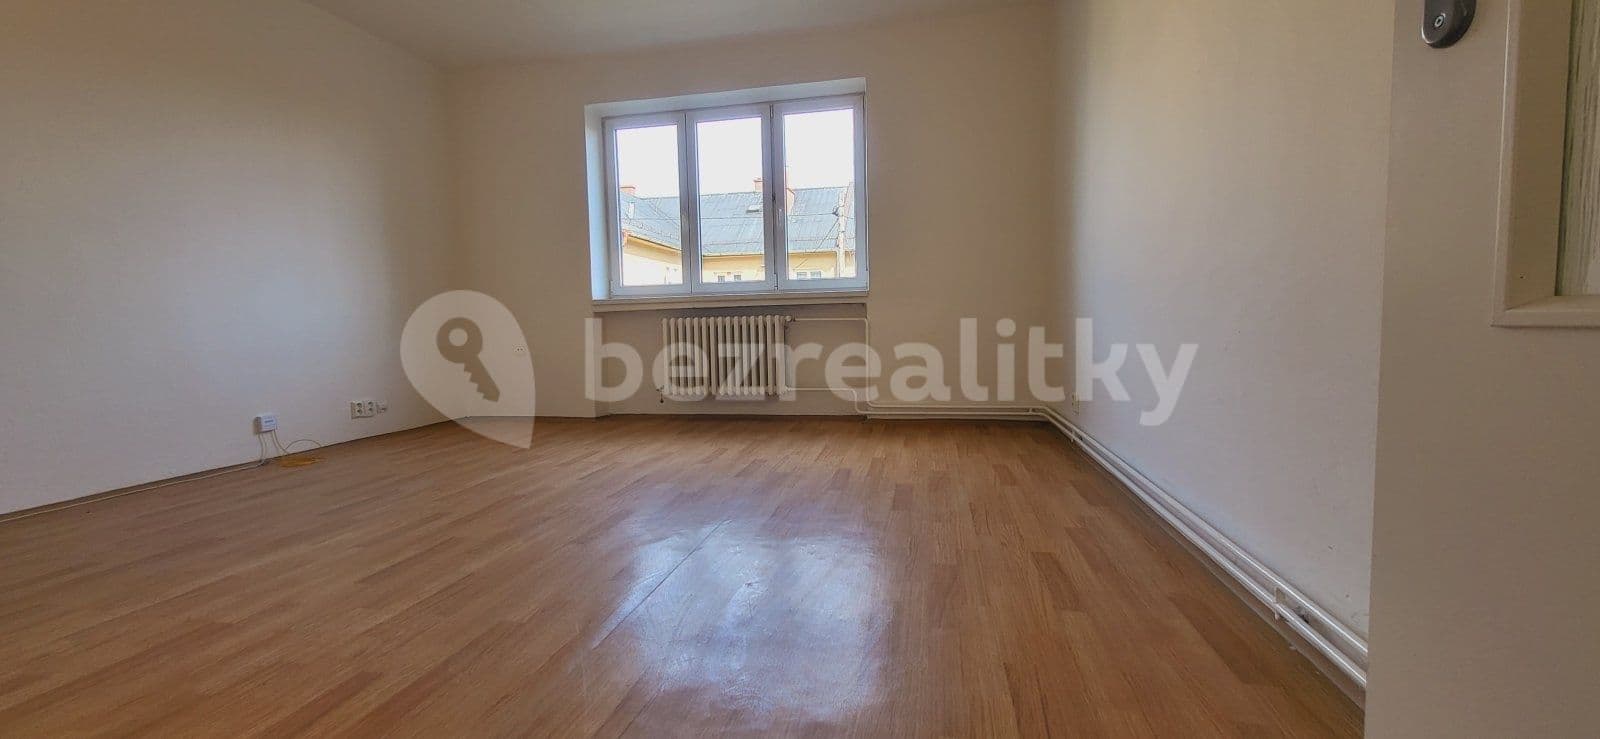 1 bedroom flat to rent, 44 m², Středová, Albrechtice, Moravskoslezský Region